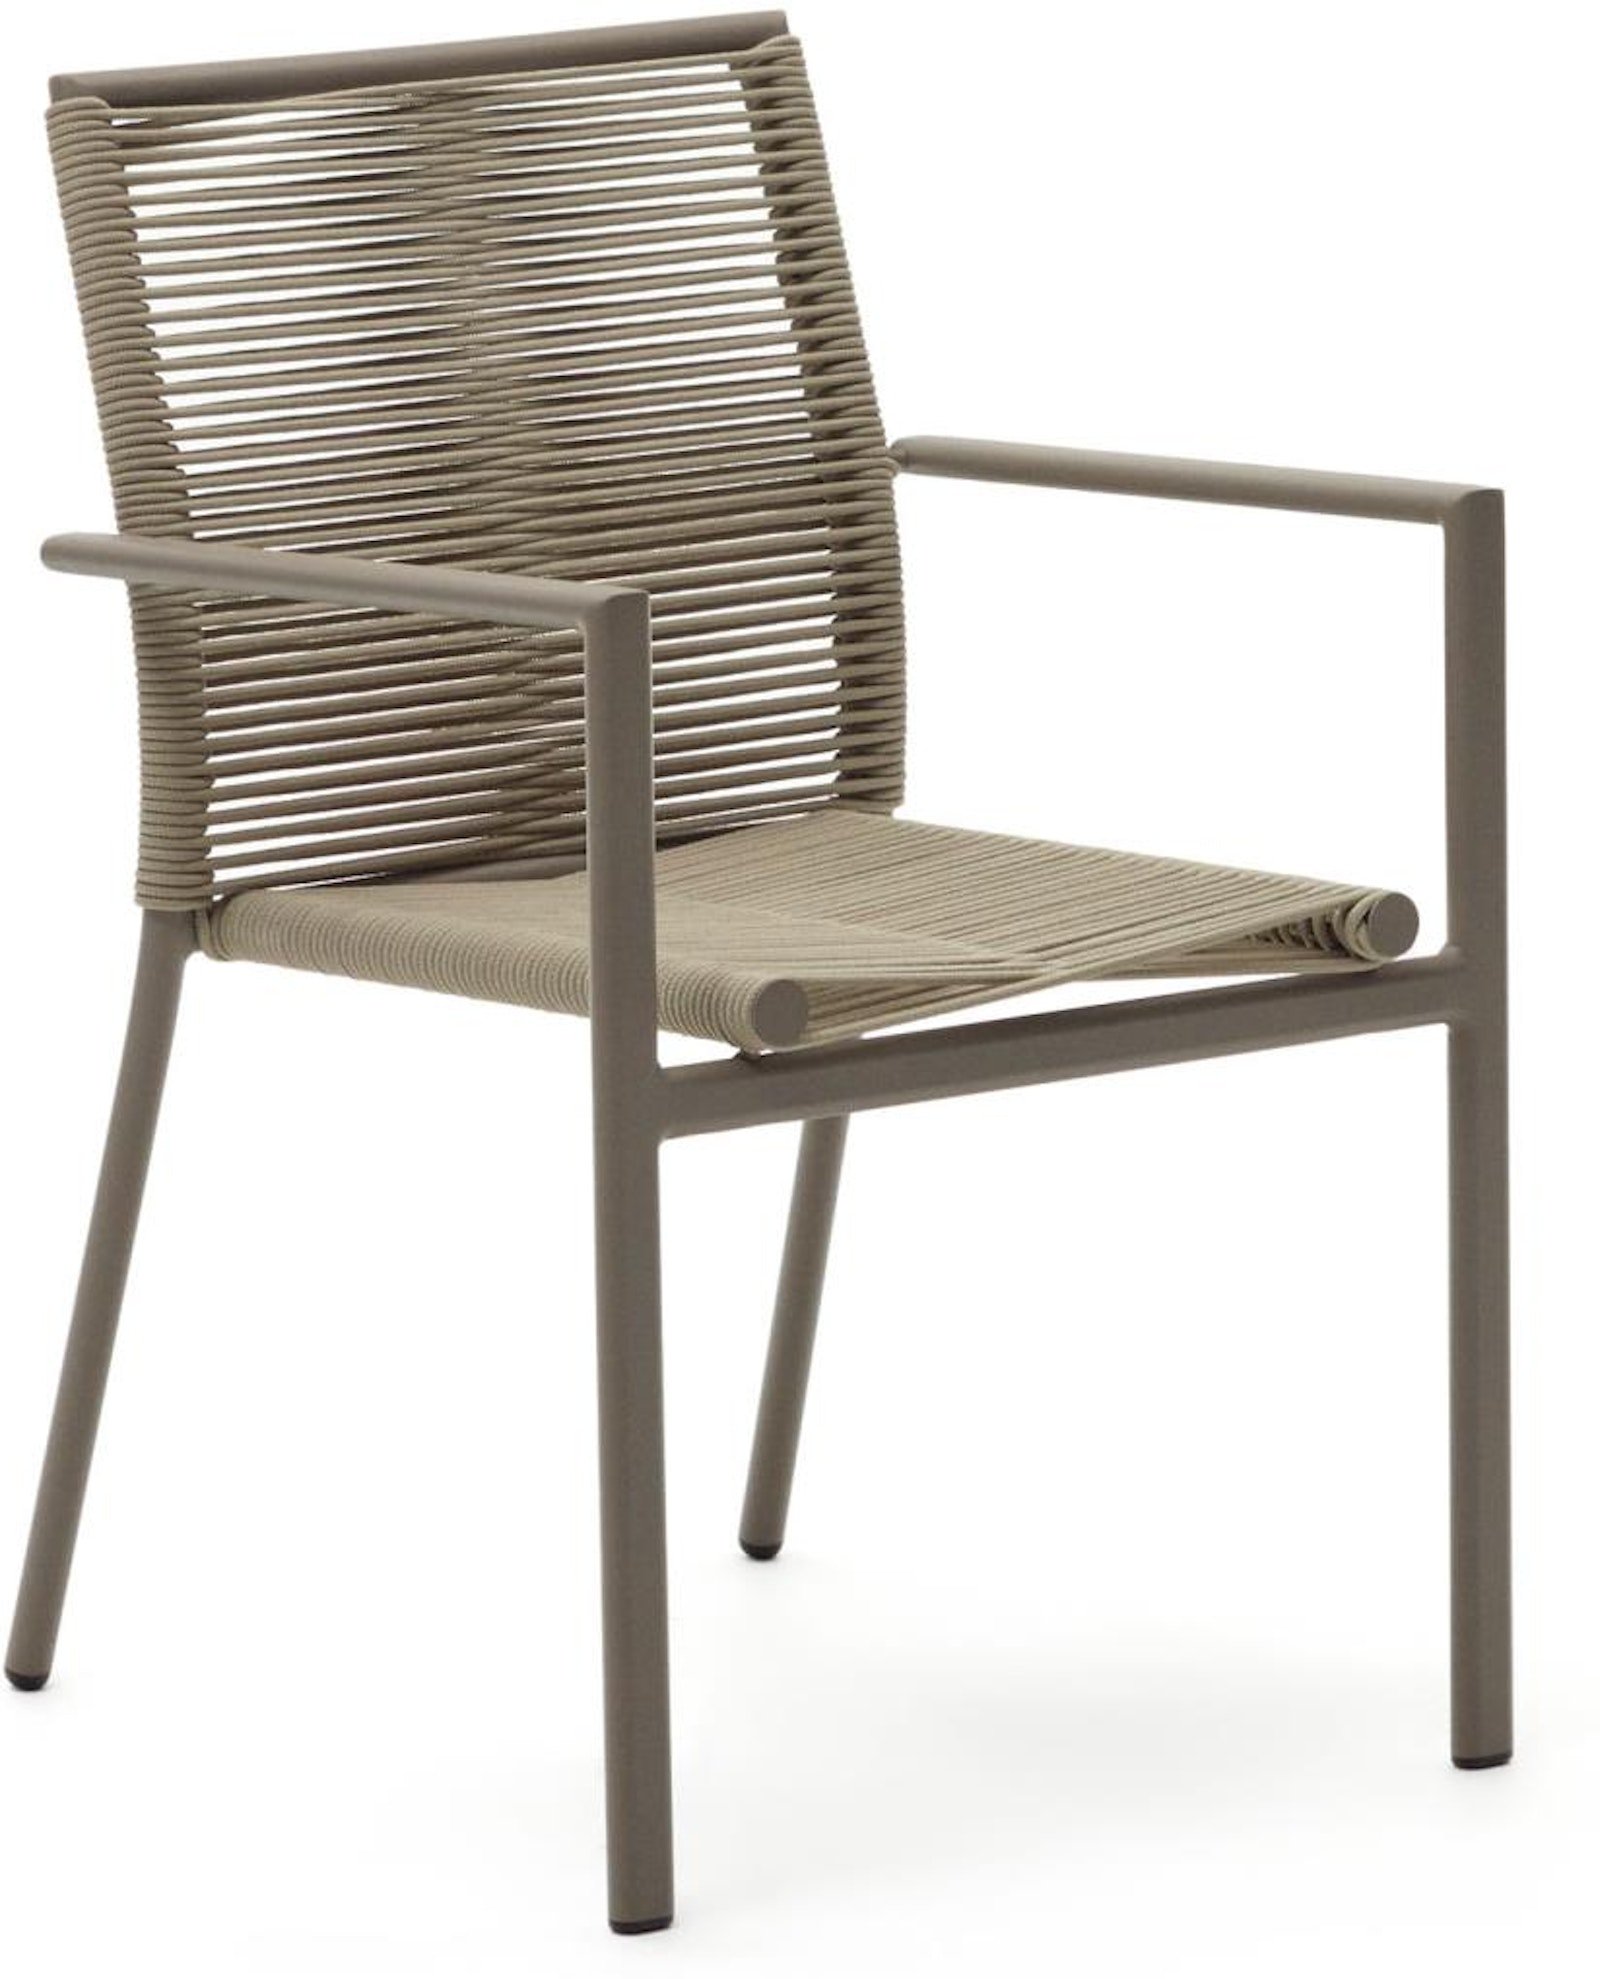 9: Culip, Udendørs stol, moderne, nordisk, reb by Laforma (H: 84 cm. x B: 56 cm. x L: 60 cm., Brun/Beige)